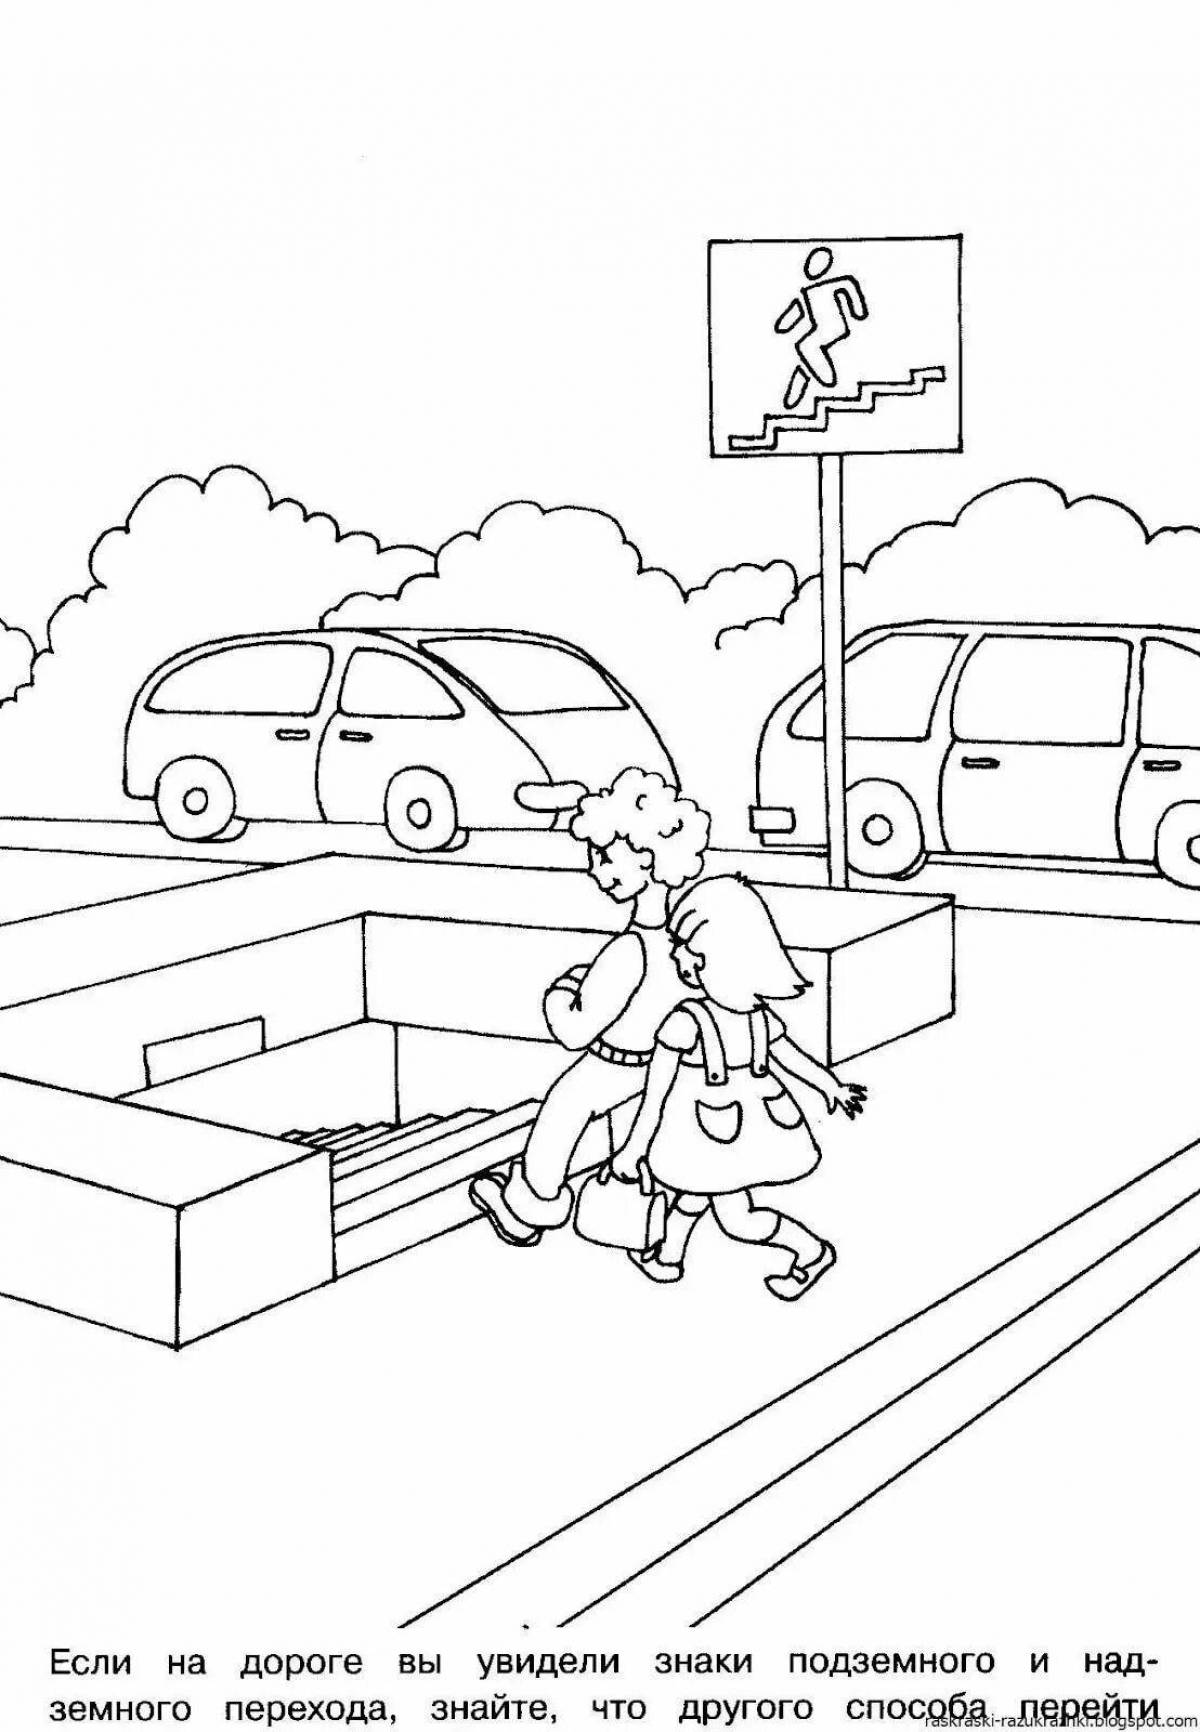 Правила дорожного движения для школьников #2